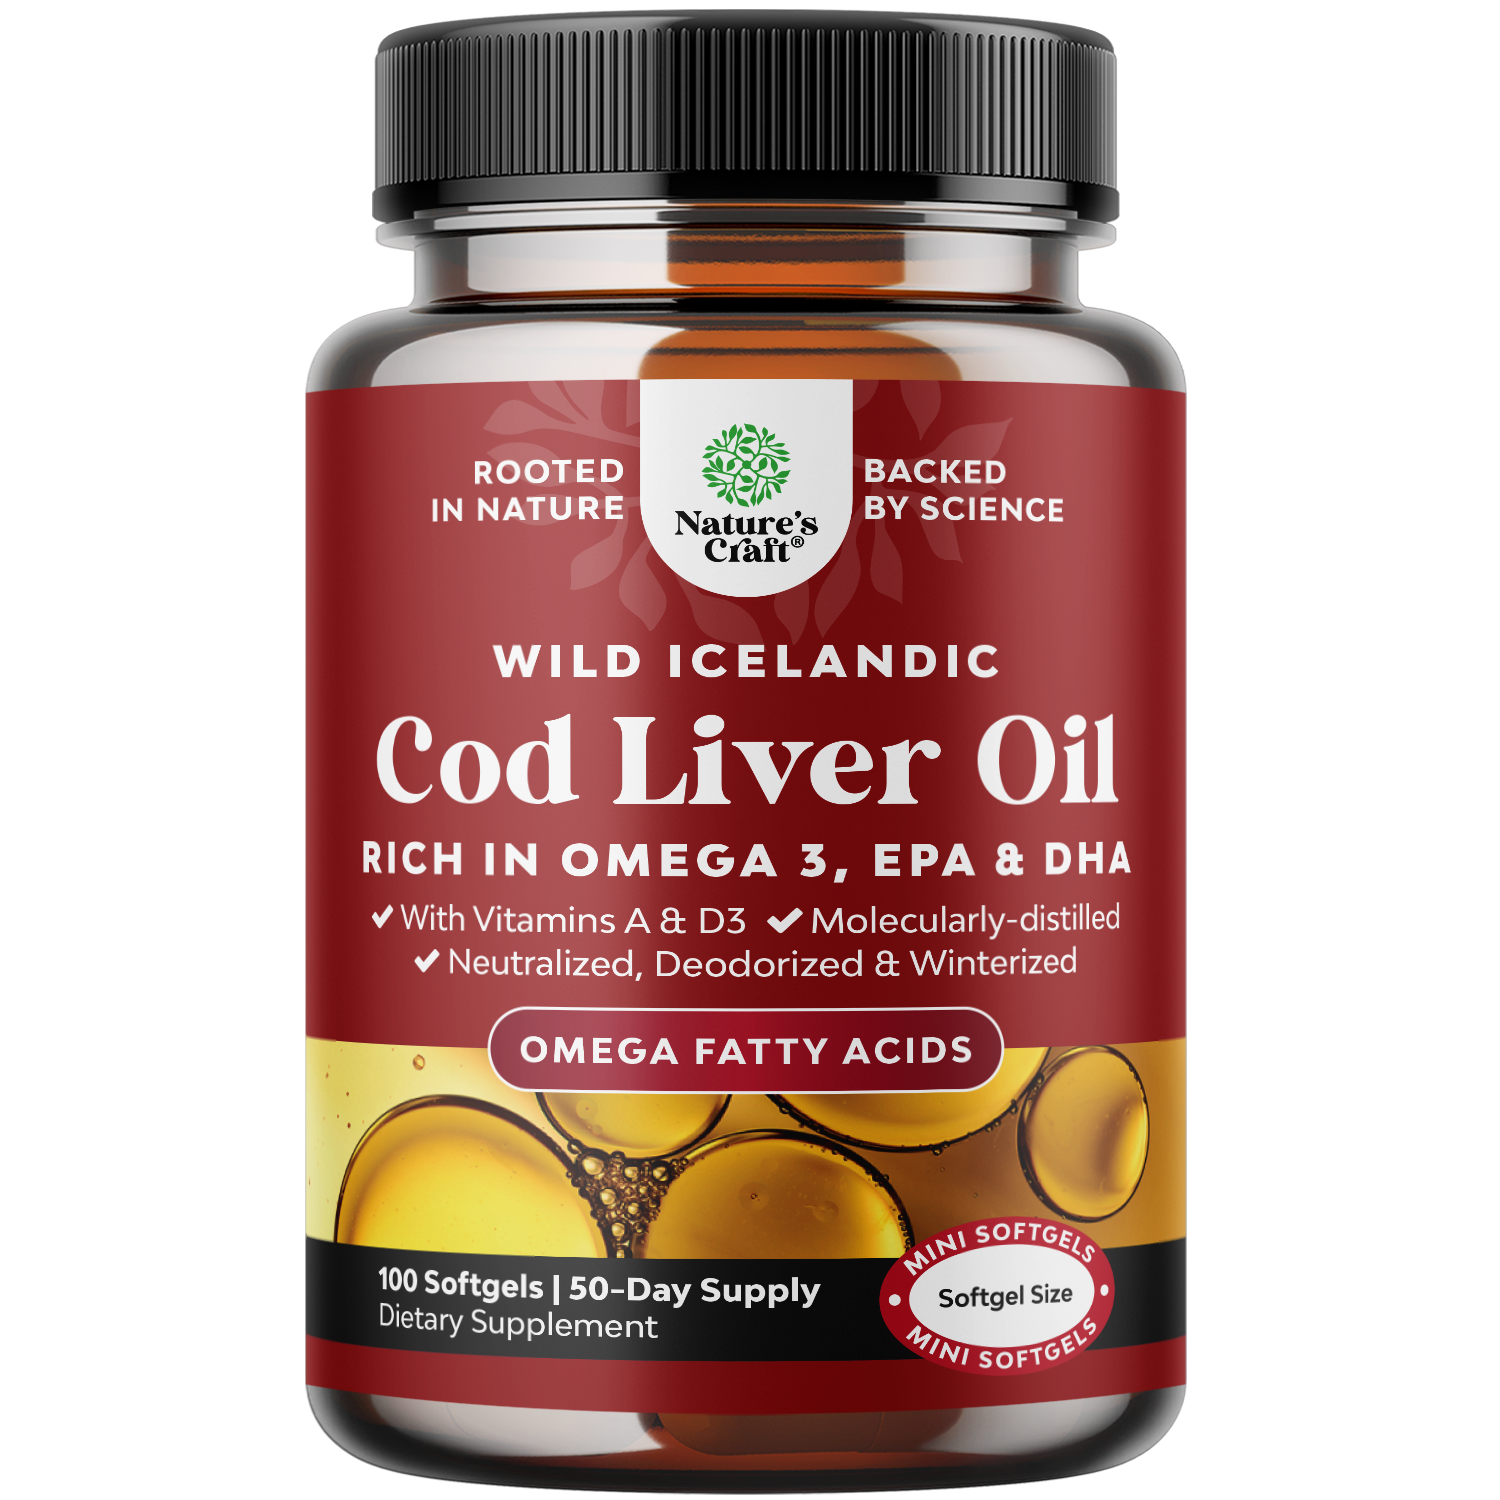 Cod Liver Oil 1000mg per serving